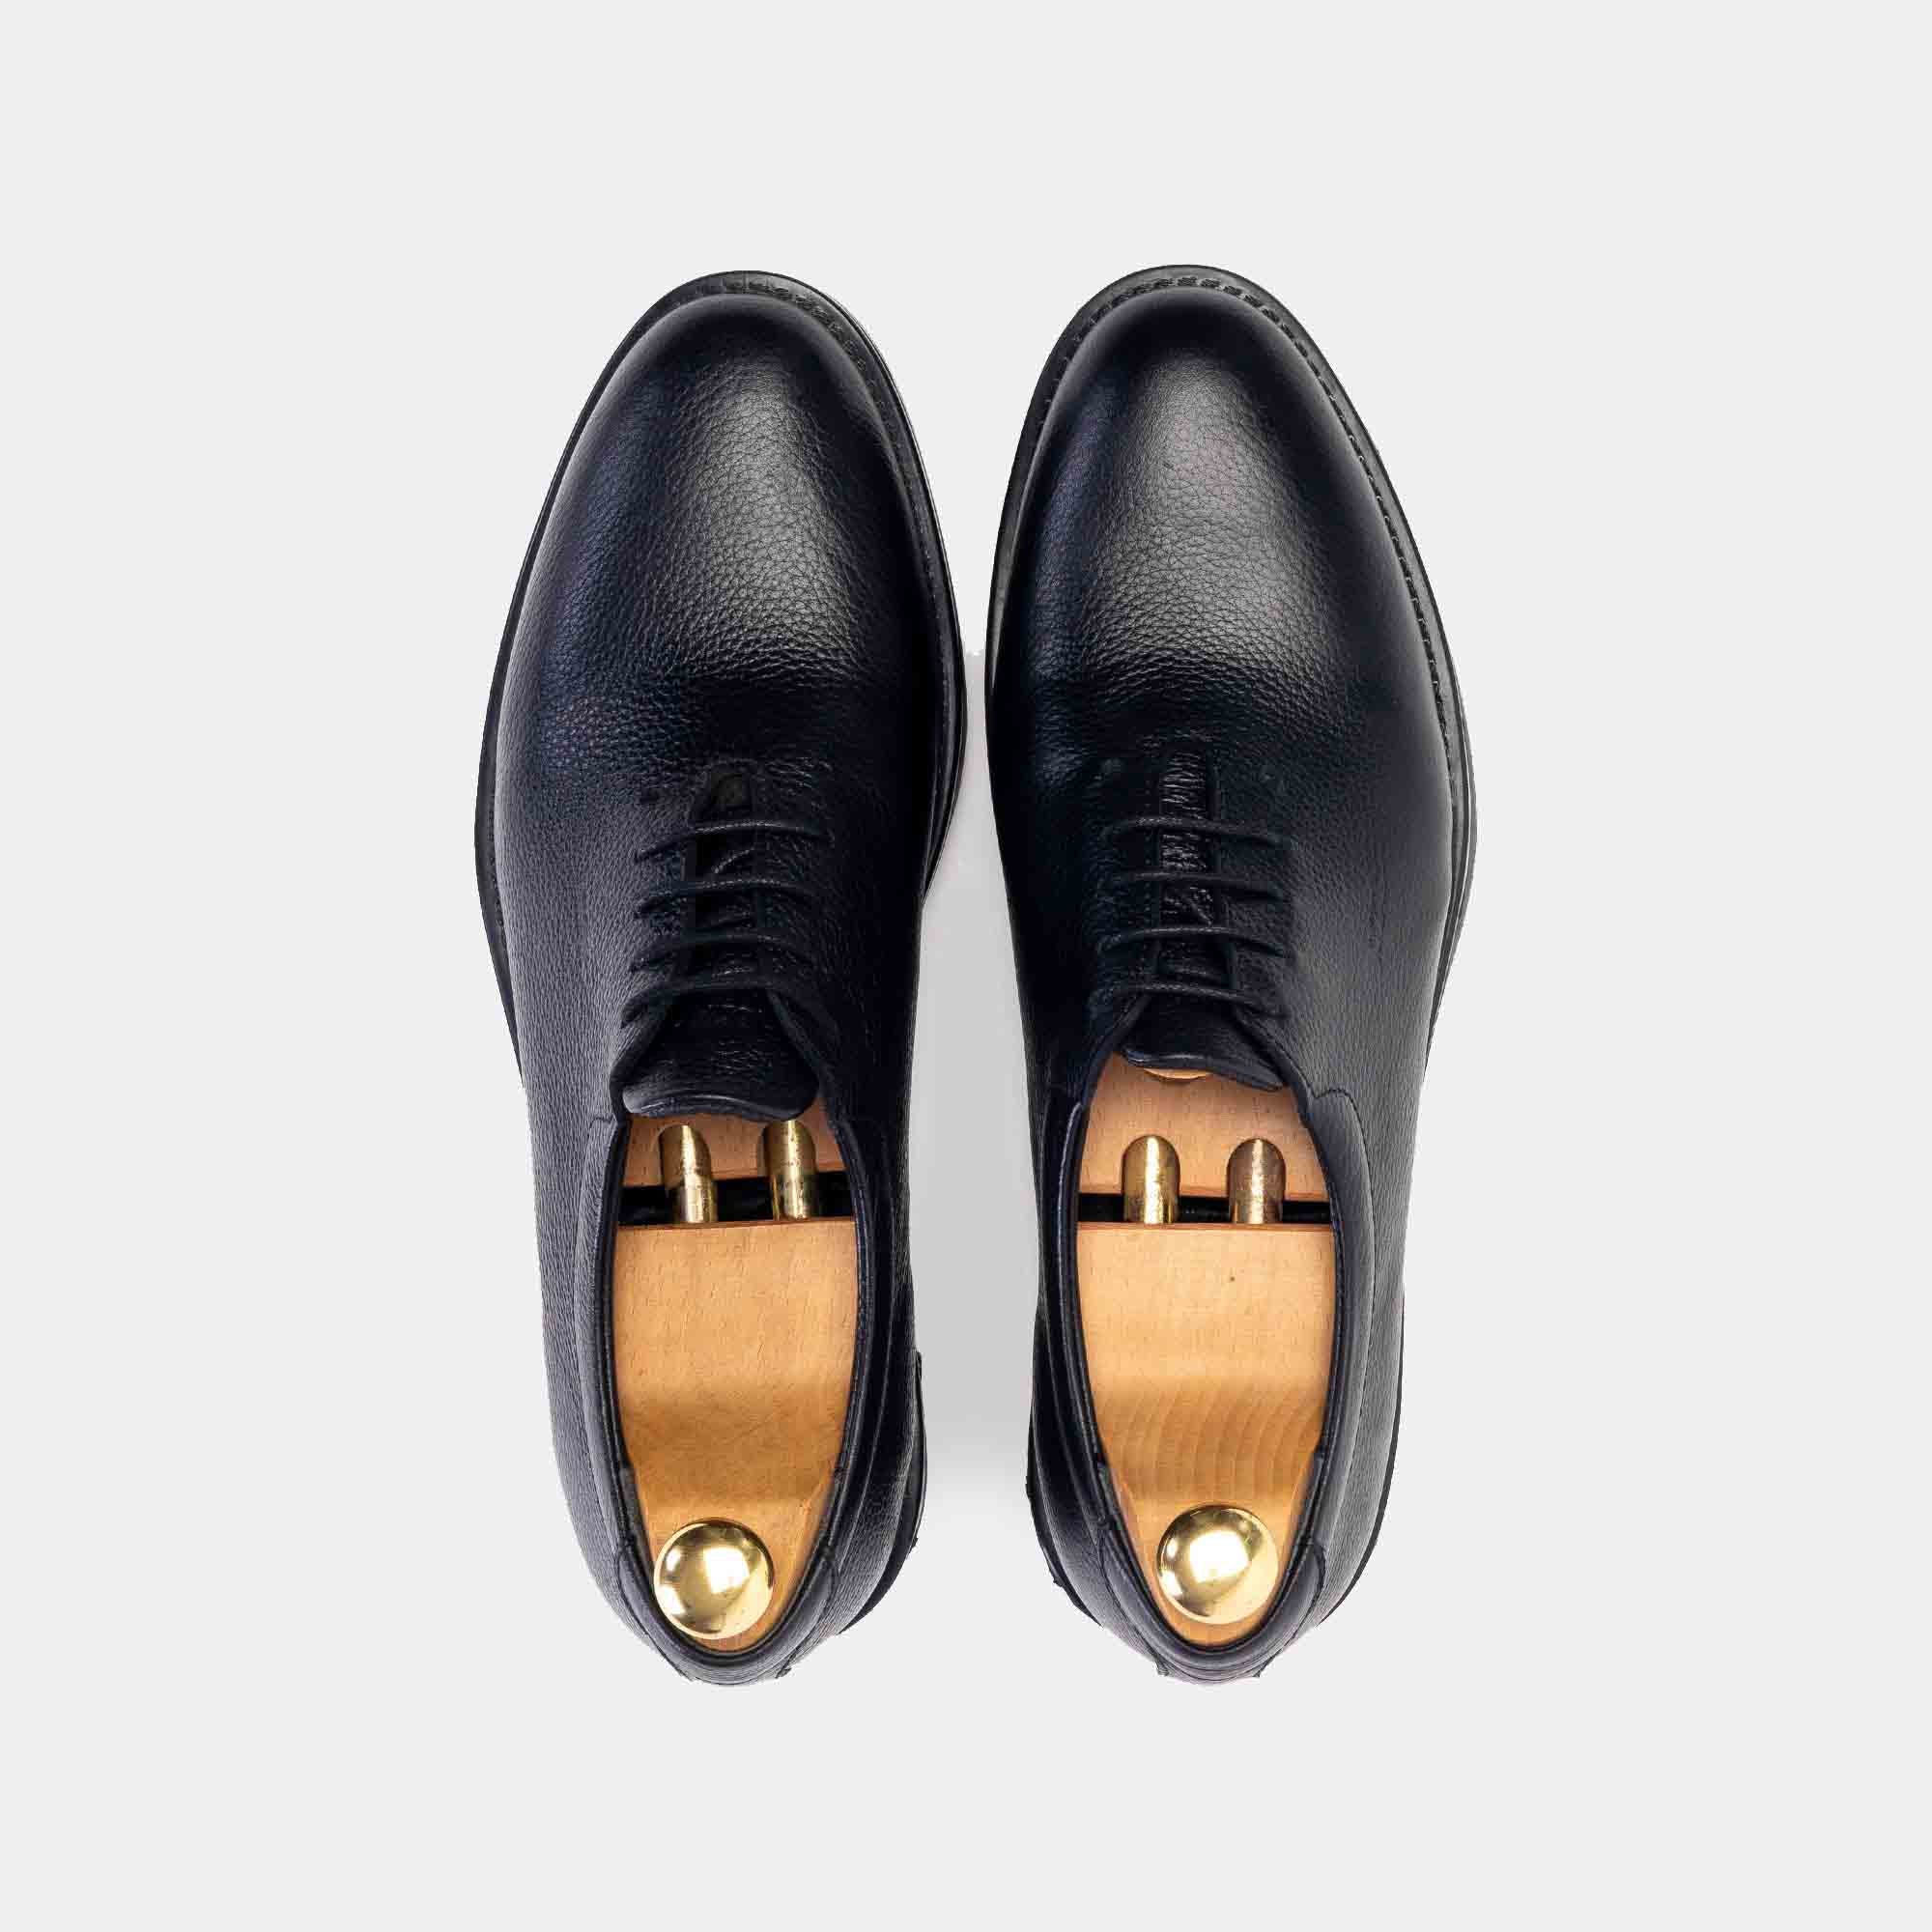 .2188 Chaussure cuir Noir